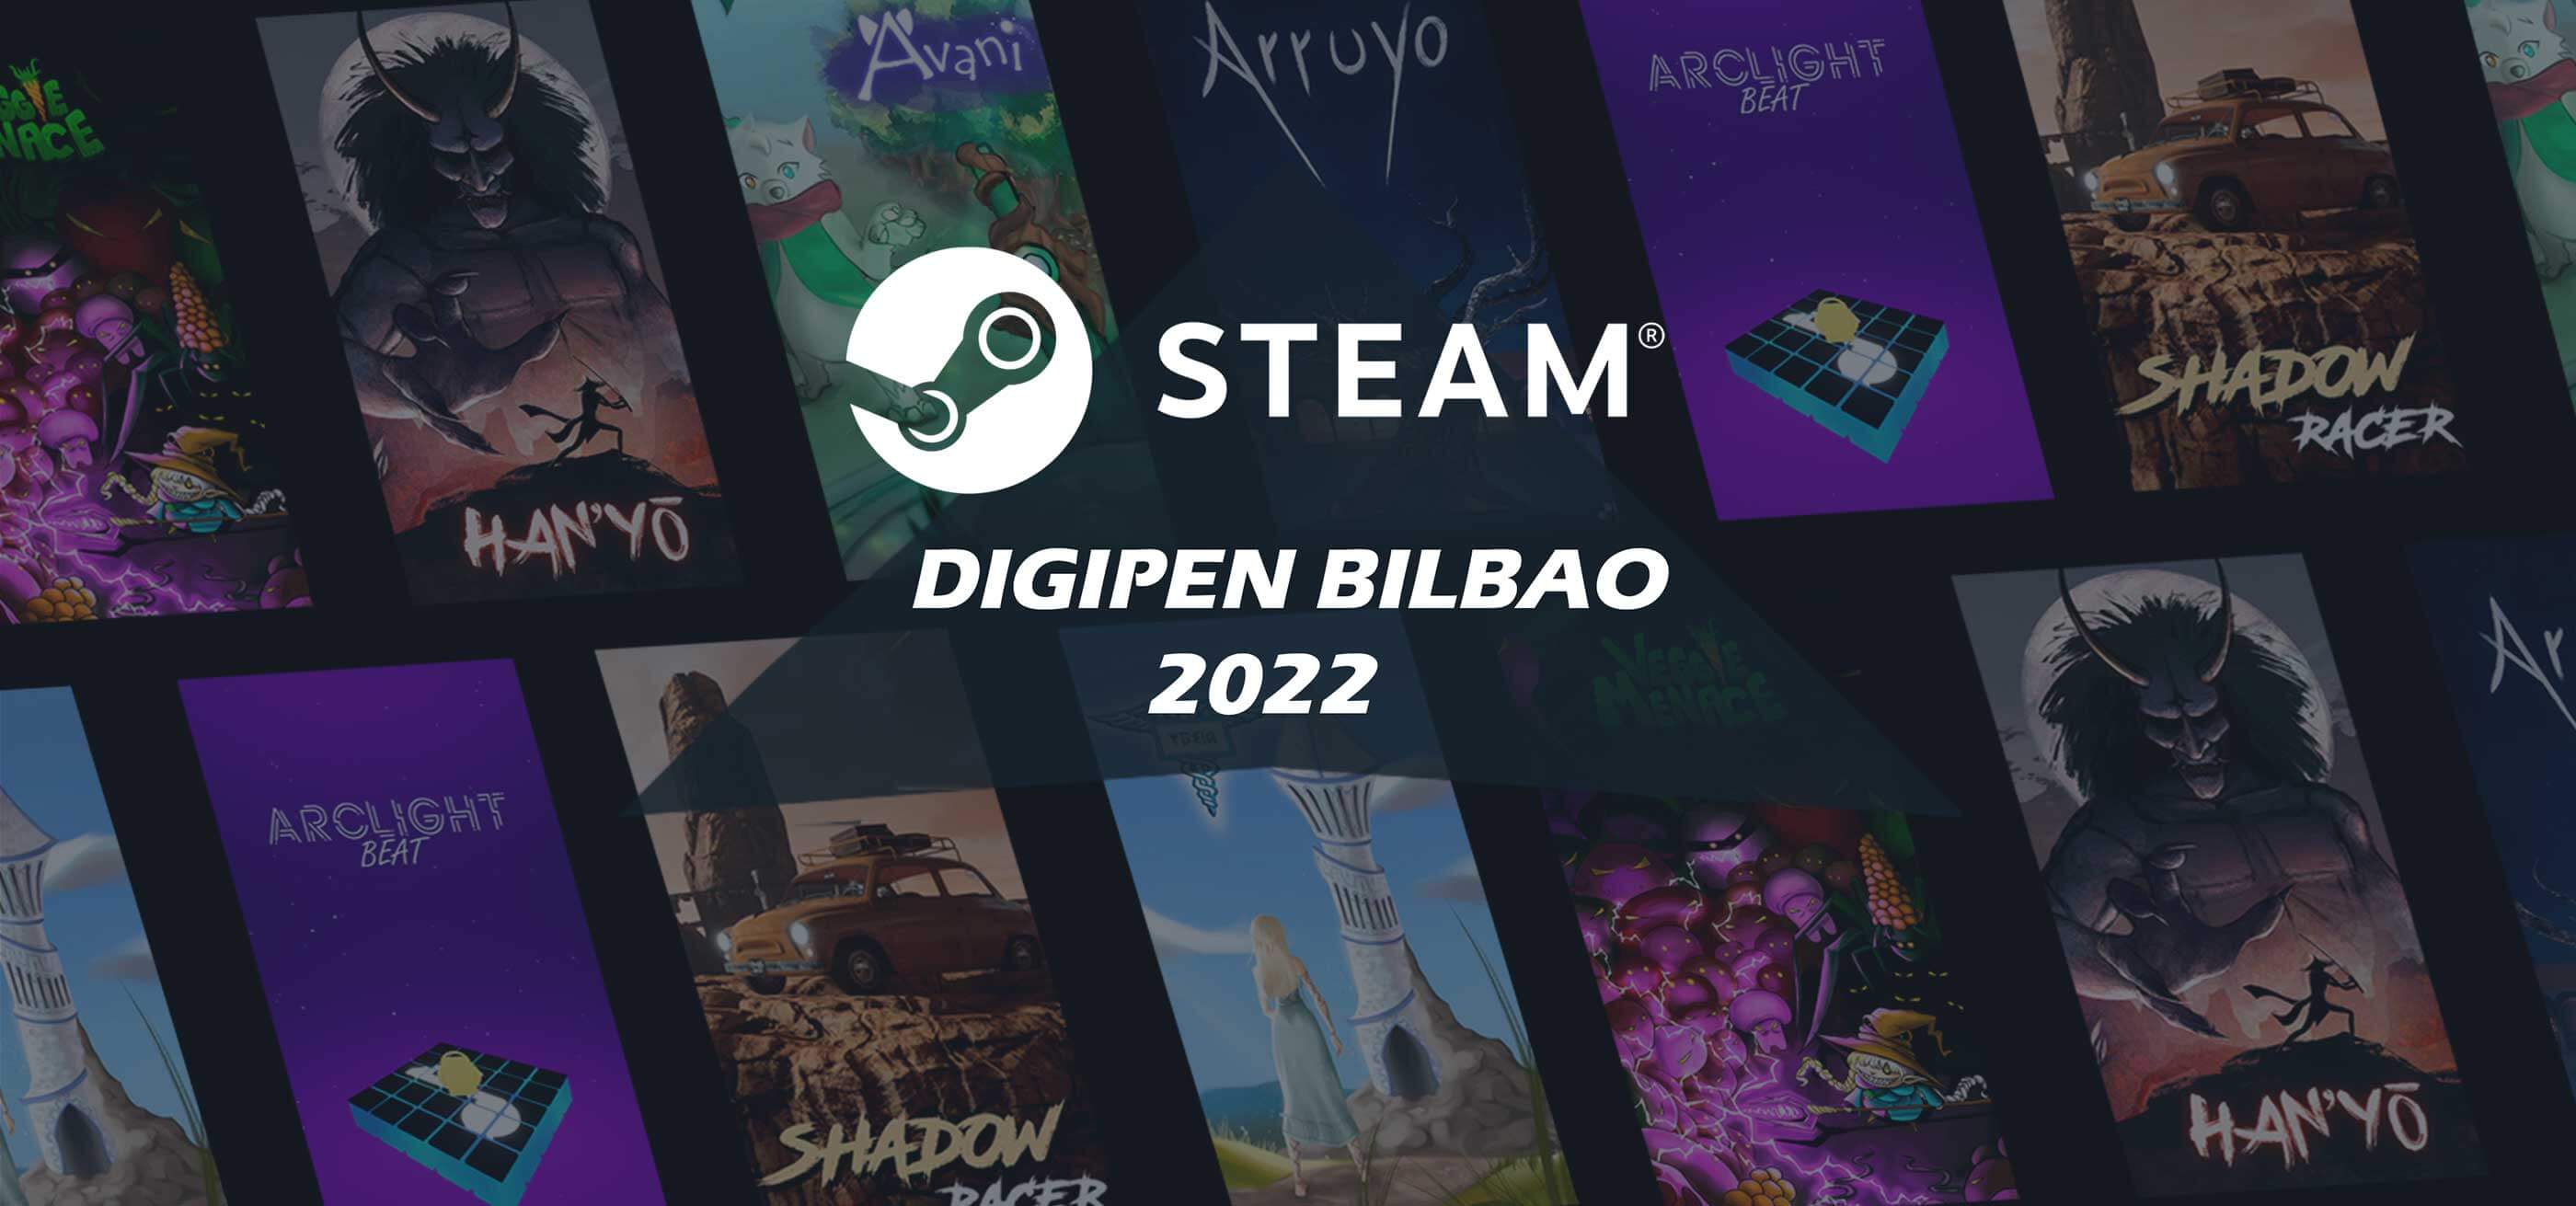 Los logos de DigiPen Bilbao 2022﻿ y Steam con una serie de juegos expuestos de fondo